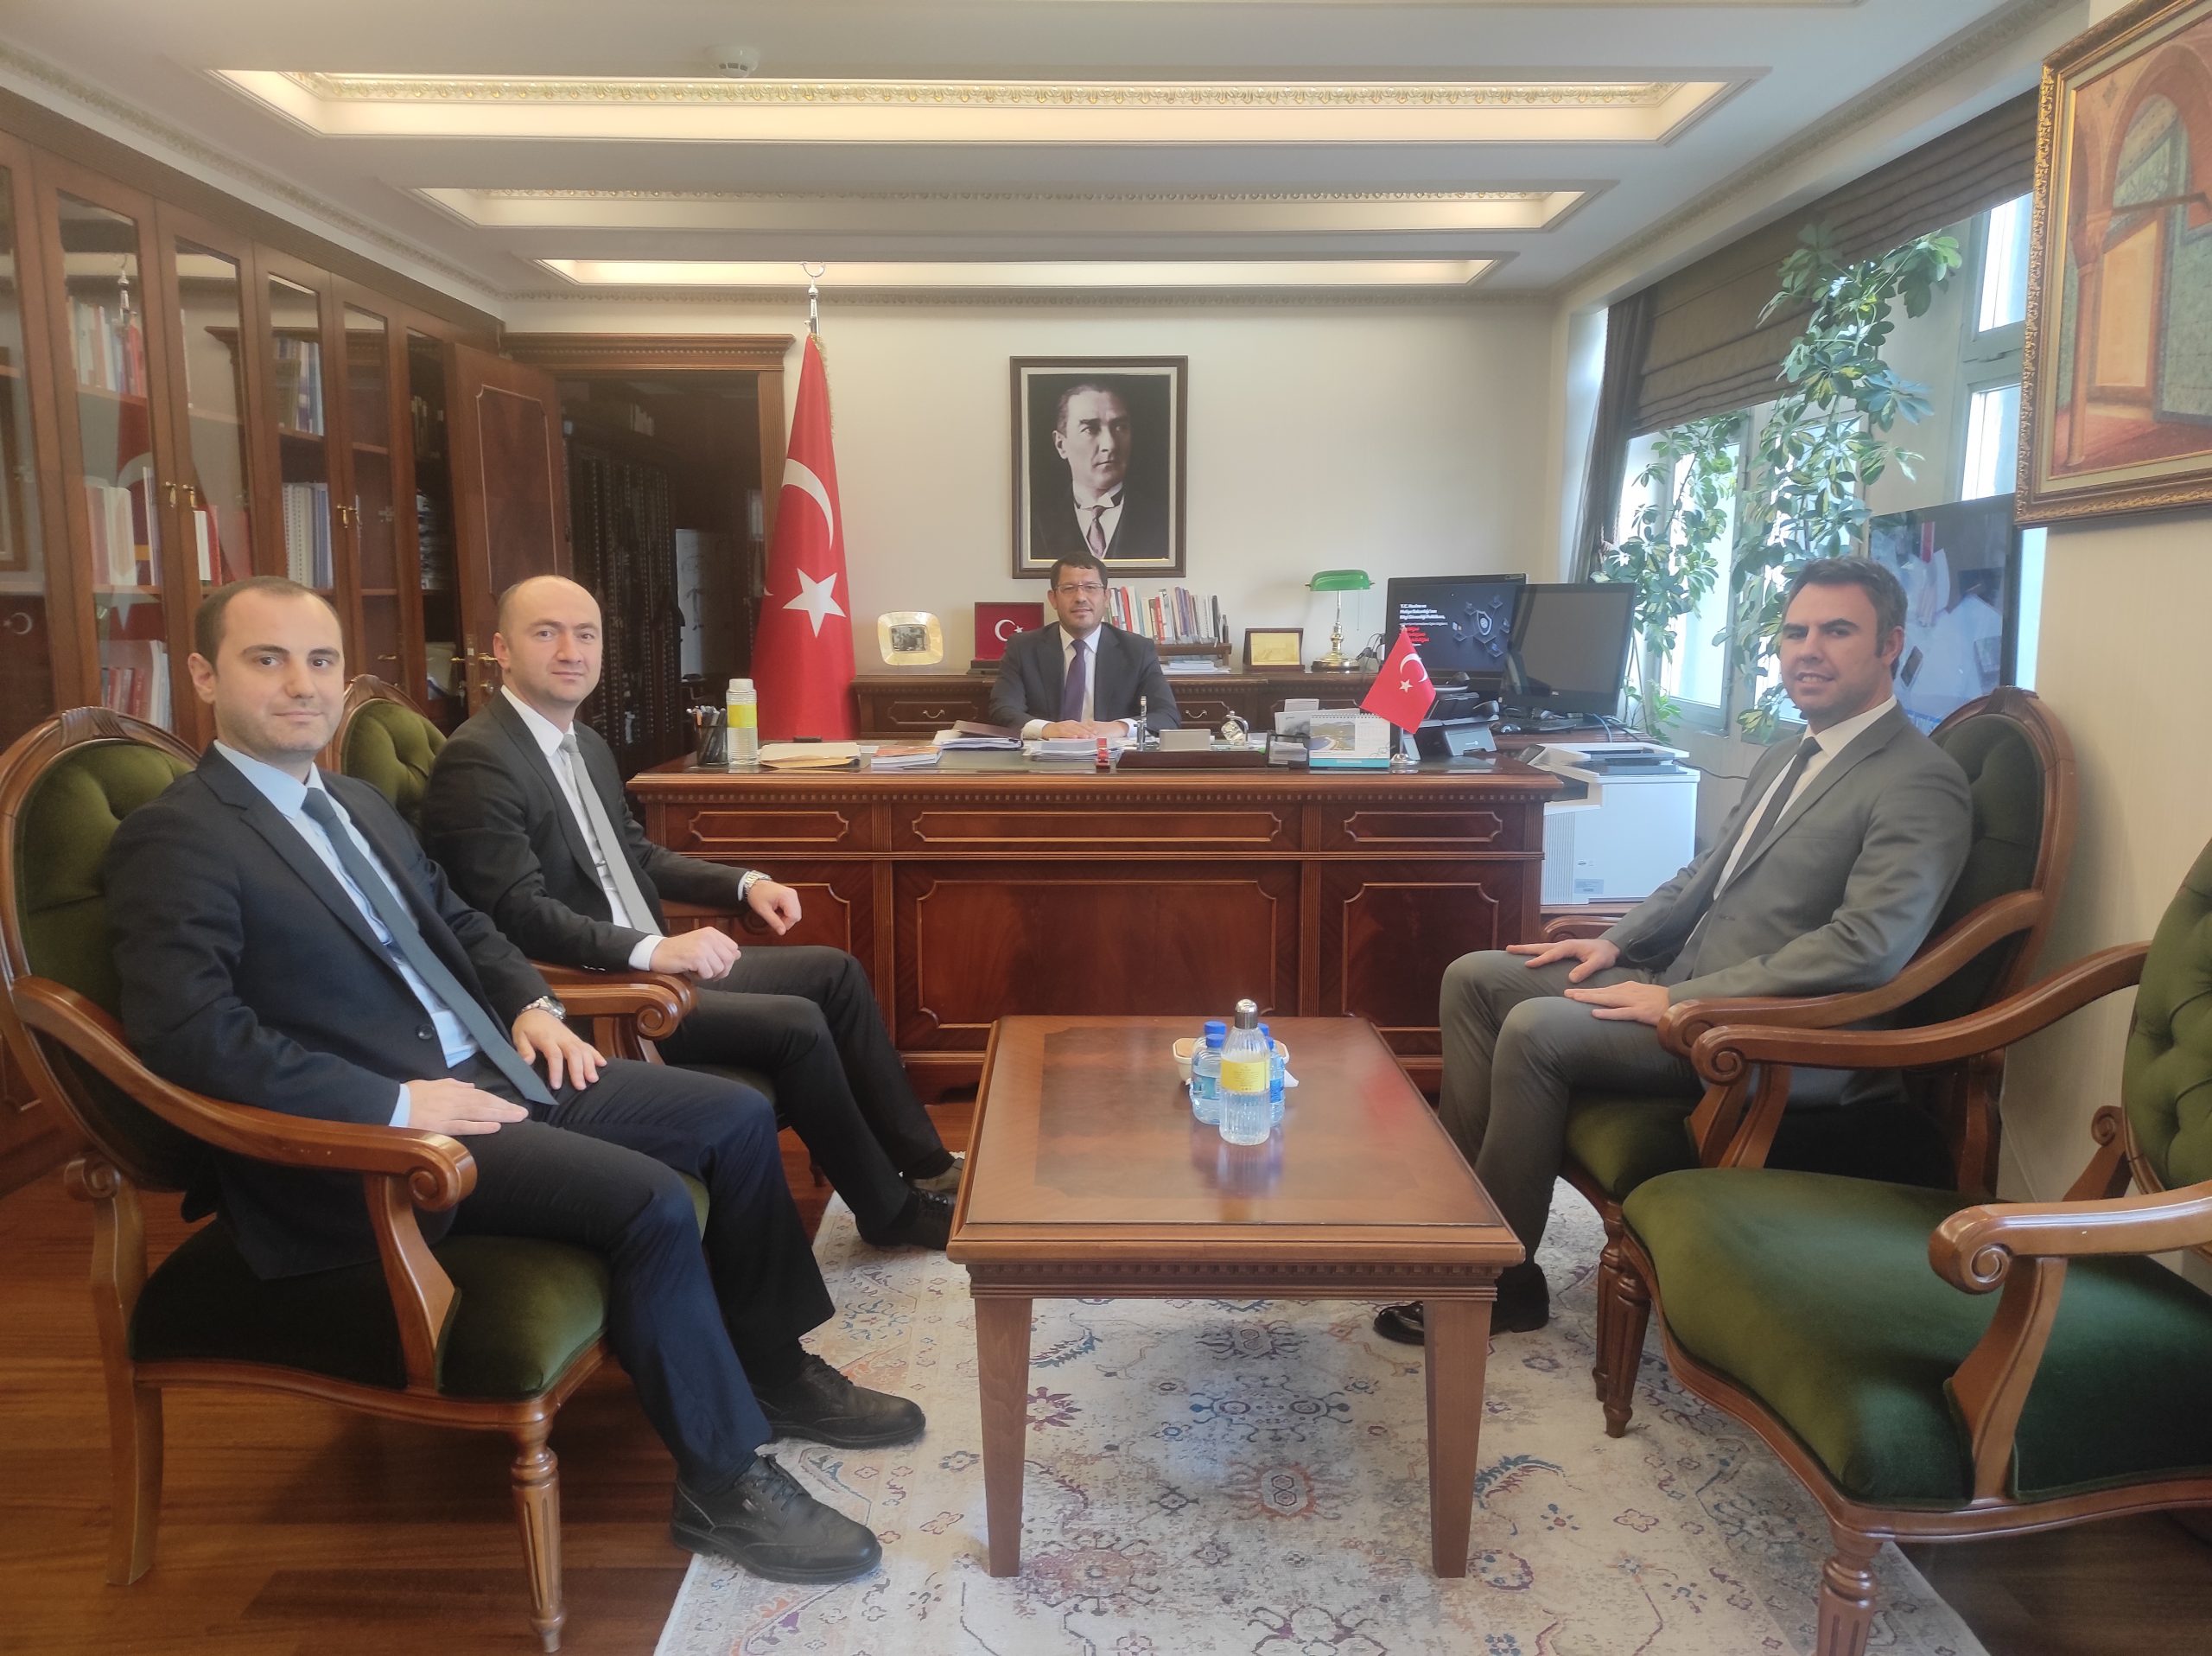 Bakanlığımız Strateji Geliştirme Başkanı Sn. Mustafa KOÇ’u ziyaret ettik.